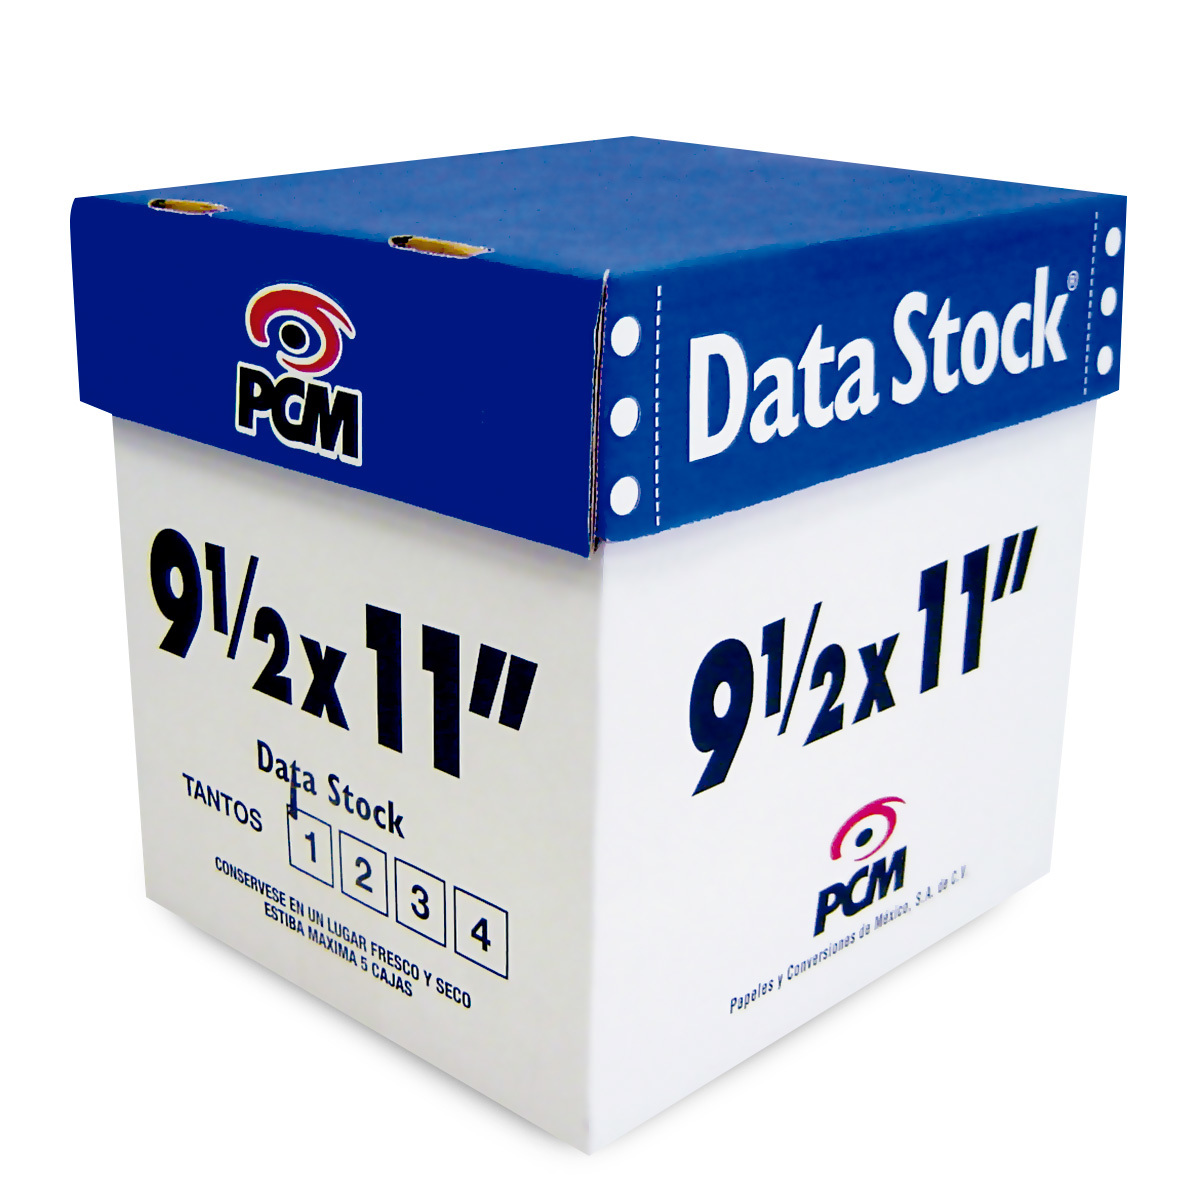 Papel Stock Forma Continua PCM DS00121500B / 1500 hojas / 2 tantos / Carta / Blanco